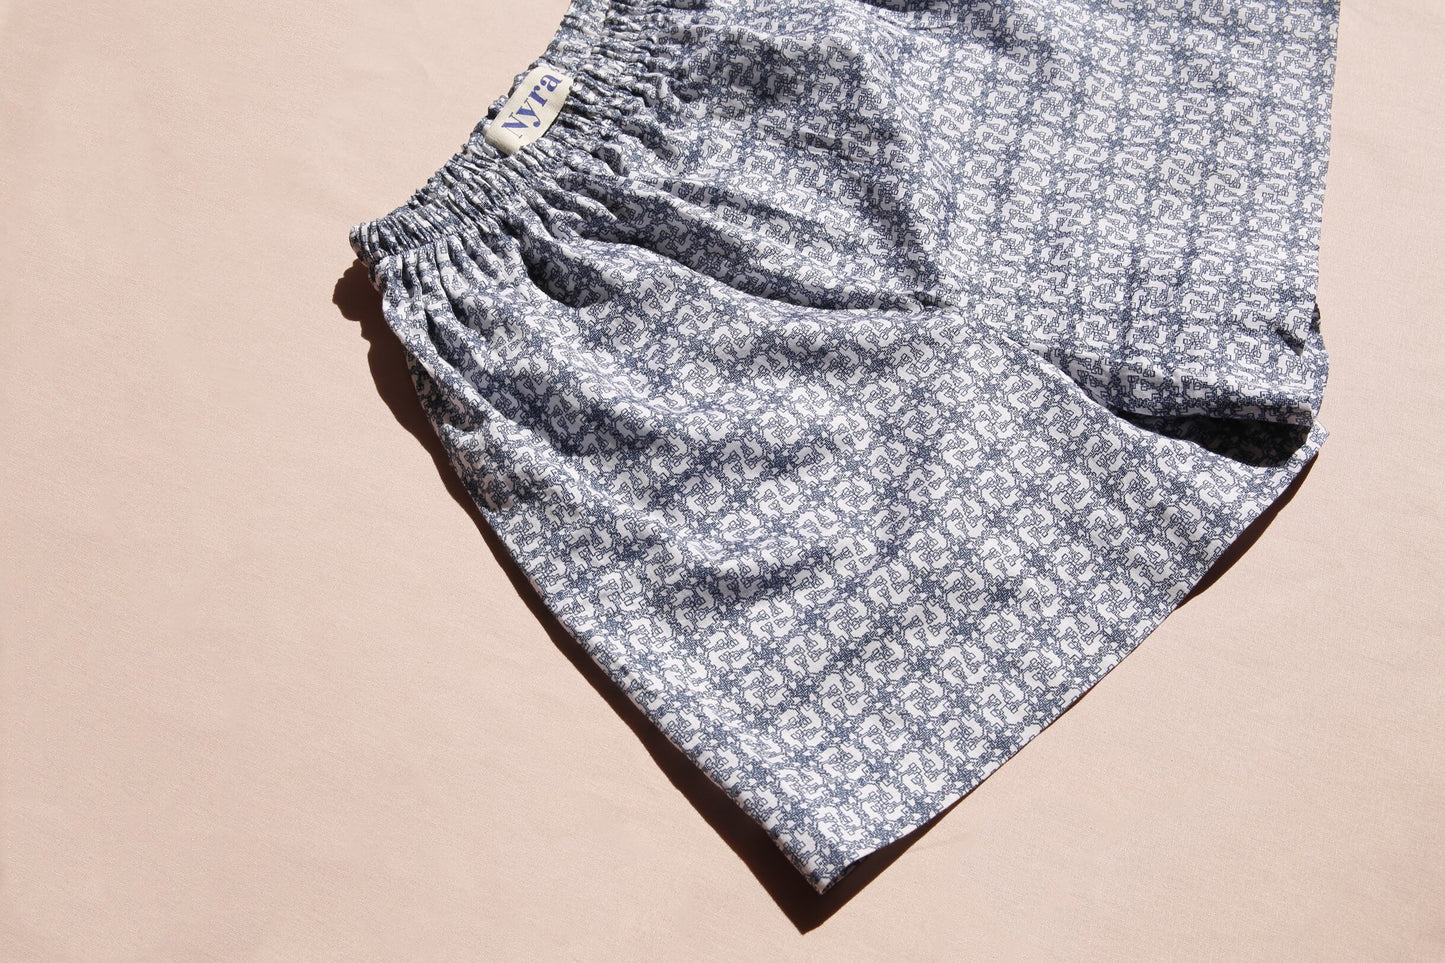 Milo Print Pyjama Shorts